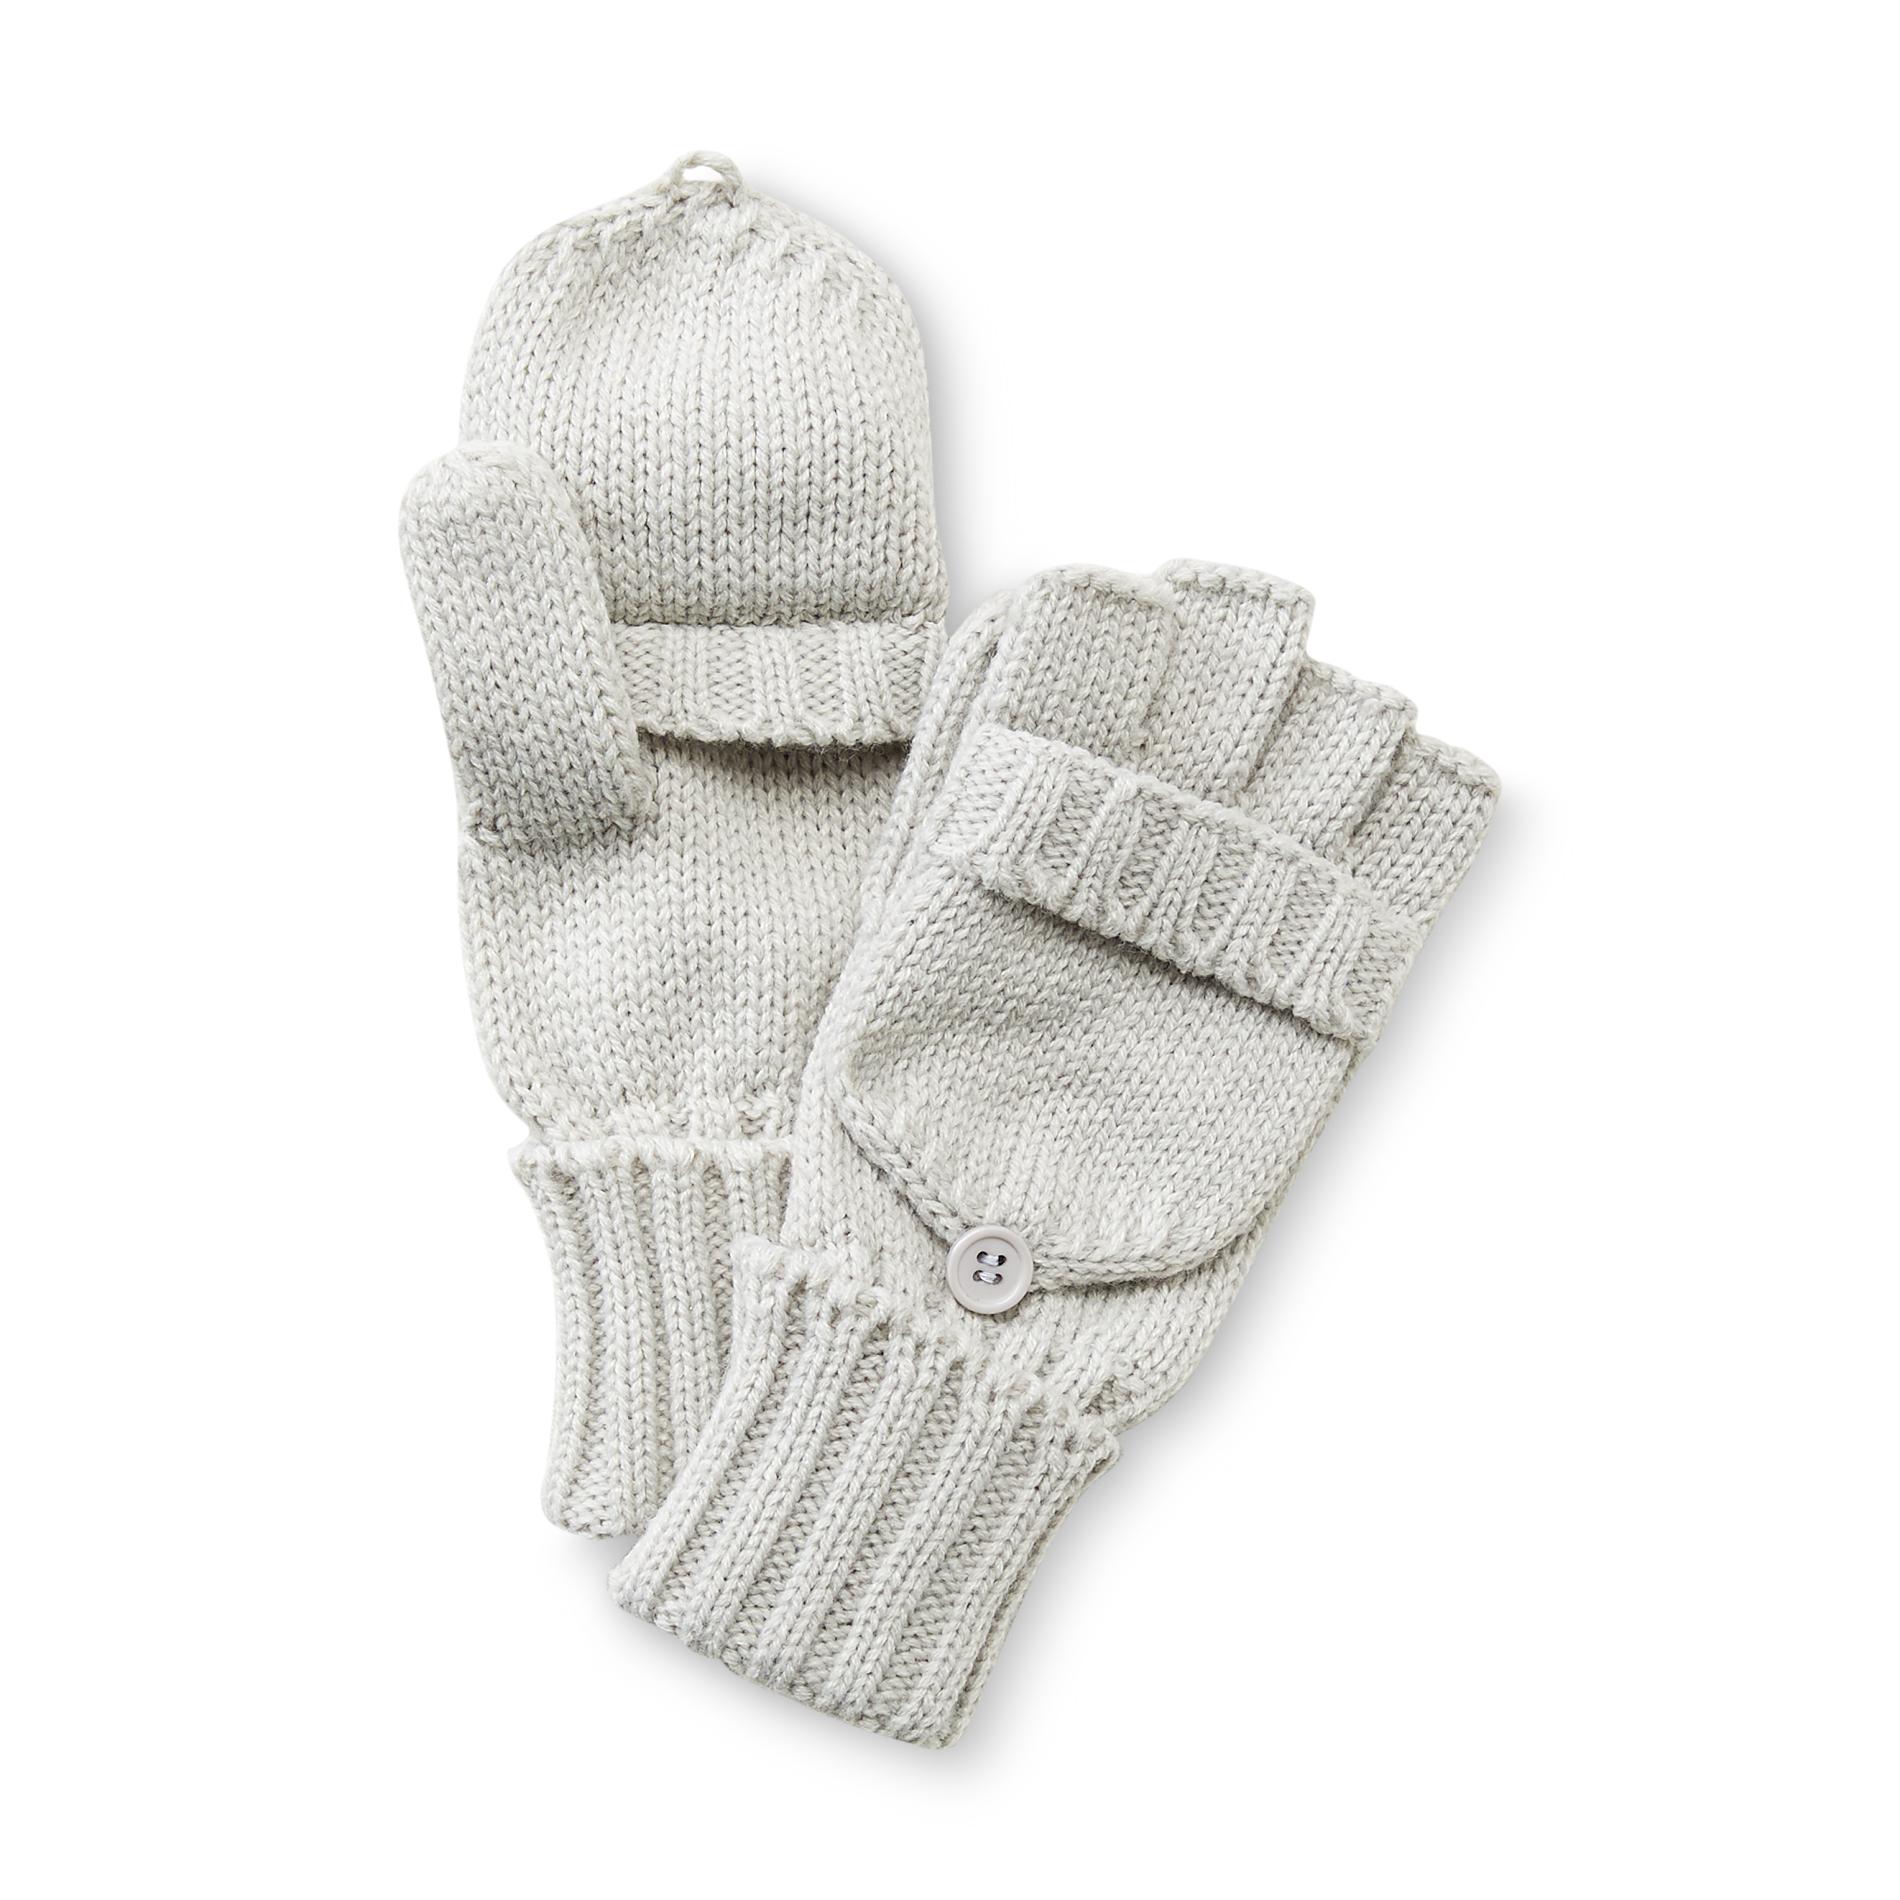 Joe Boxer Women's Flip-Top Knit Gloves